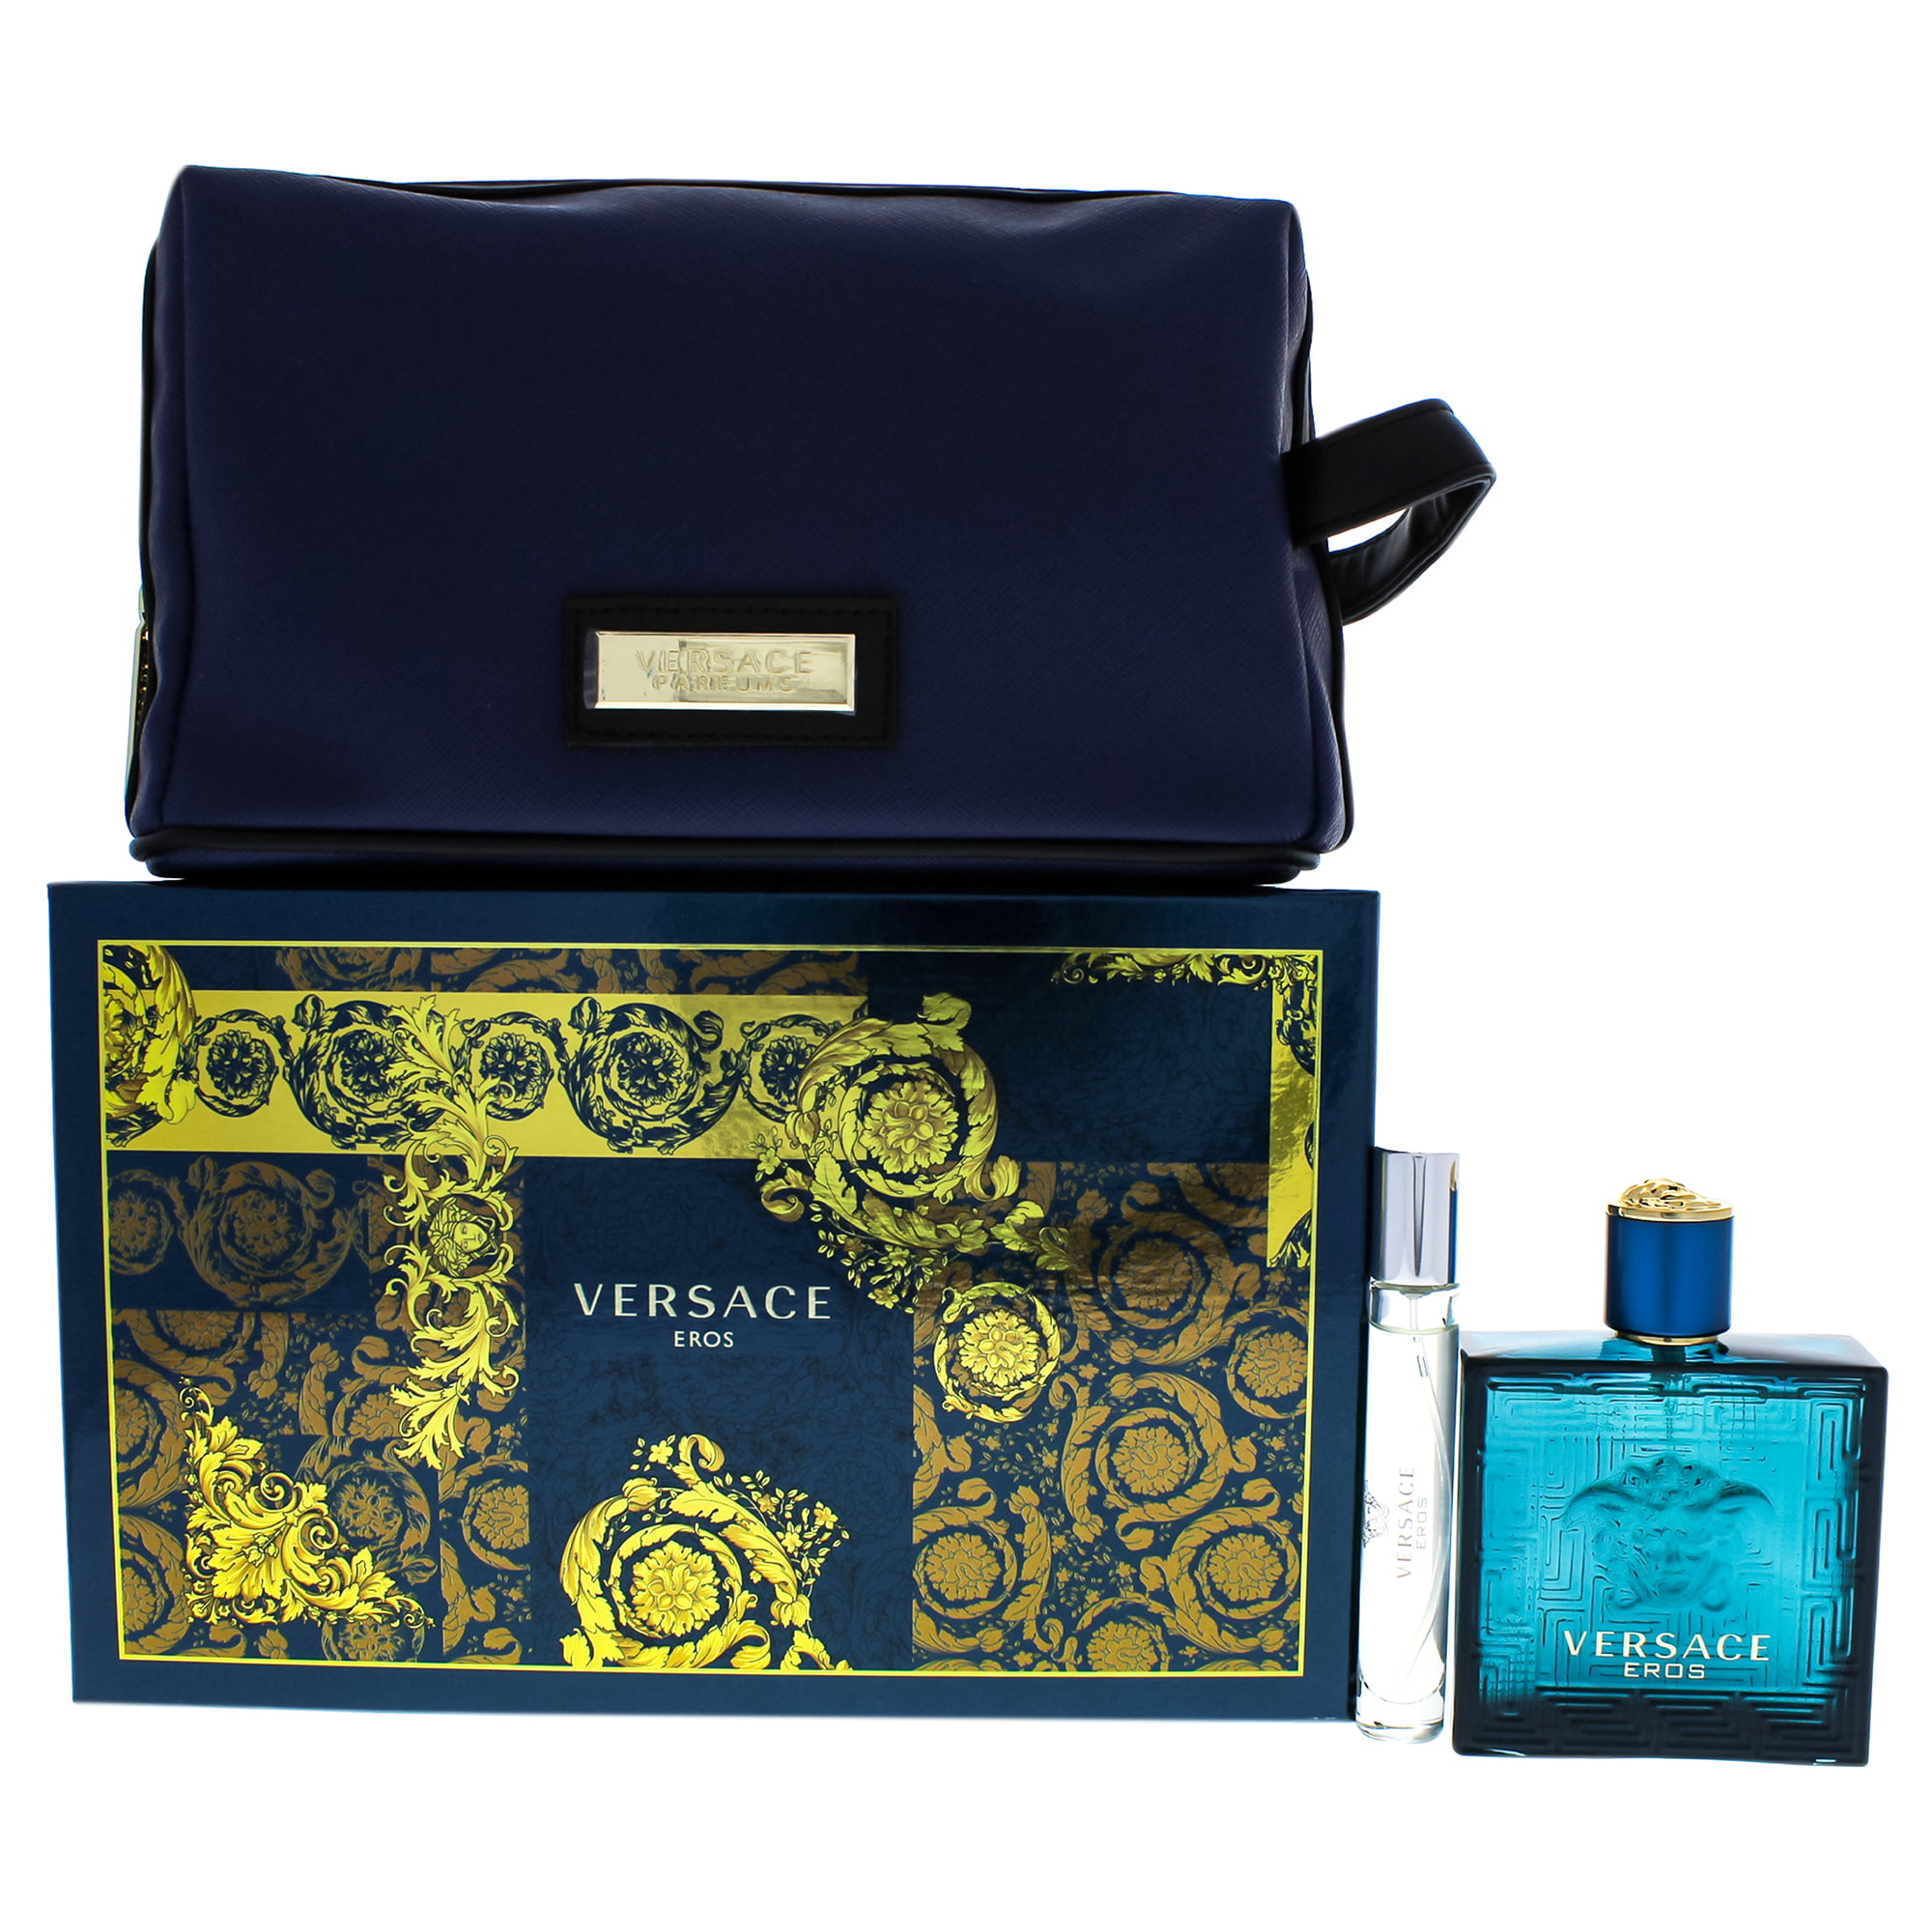 Versace - Versace Eros Cologne Gift Set For Men, 3 Pieces (3.4oz EDT